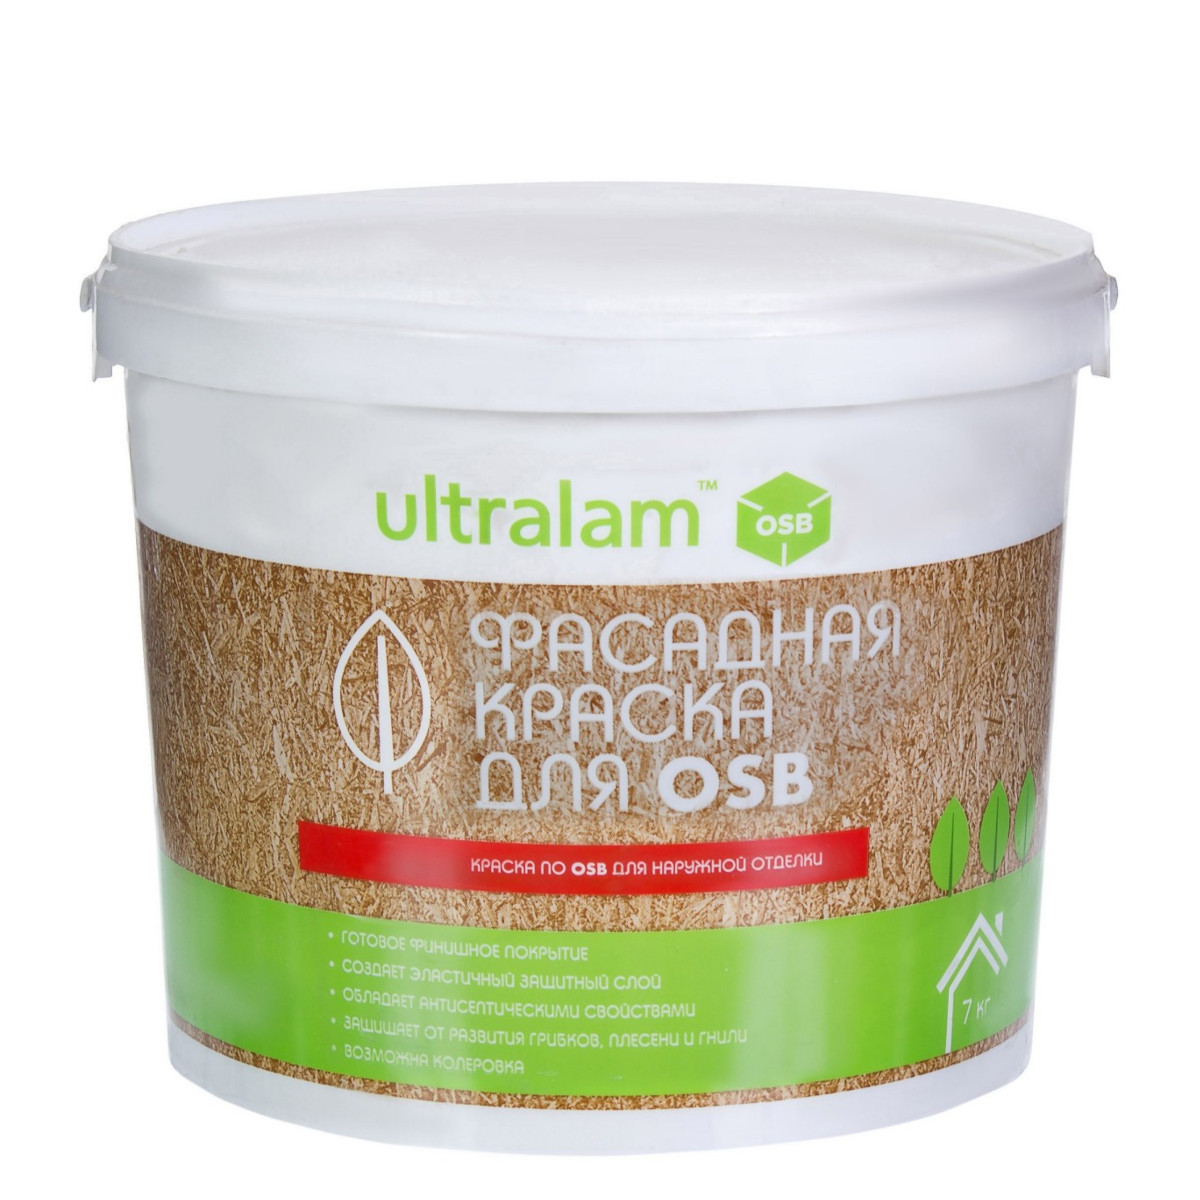 Ultralam - Фасадная краска для OSB 7 кг